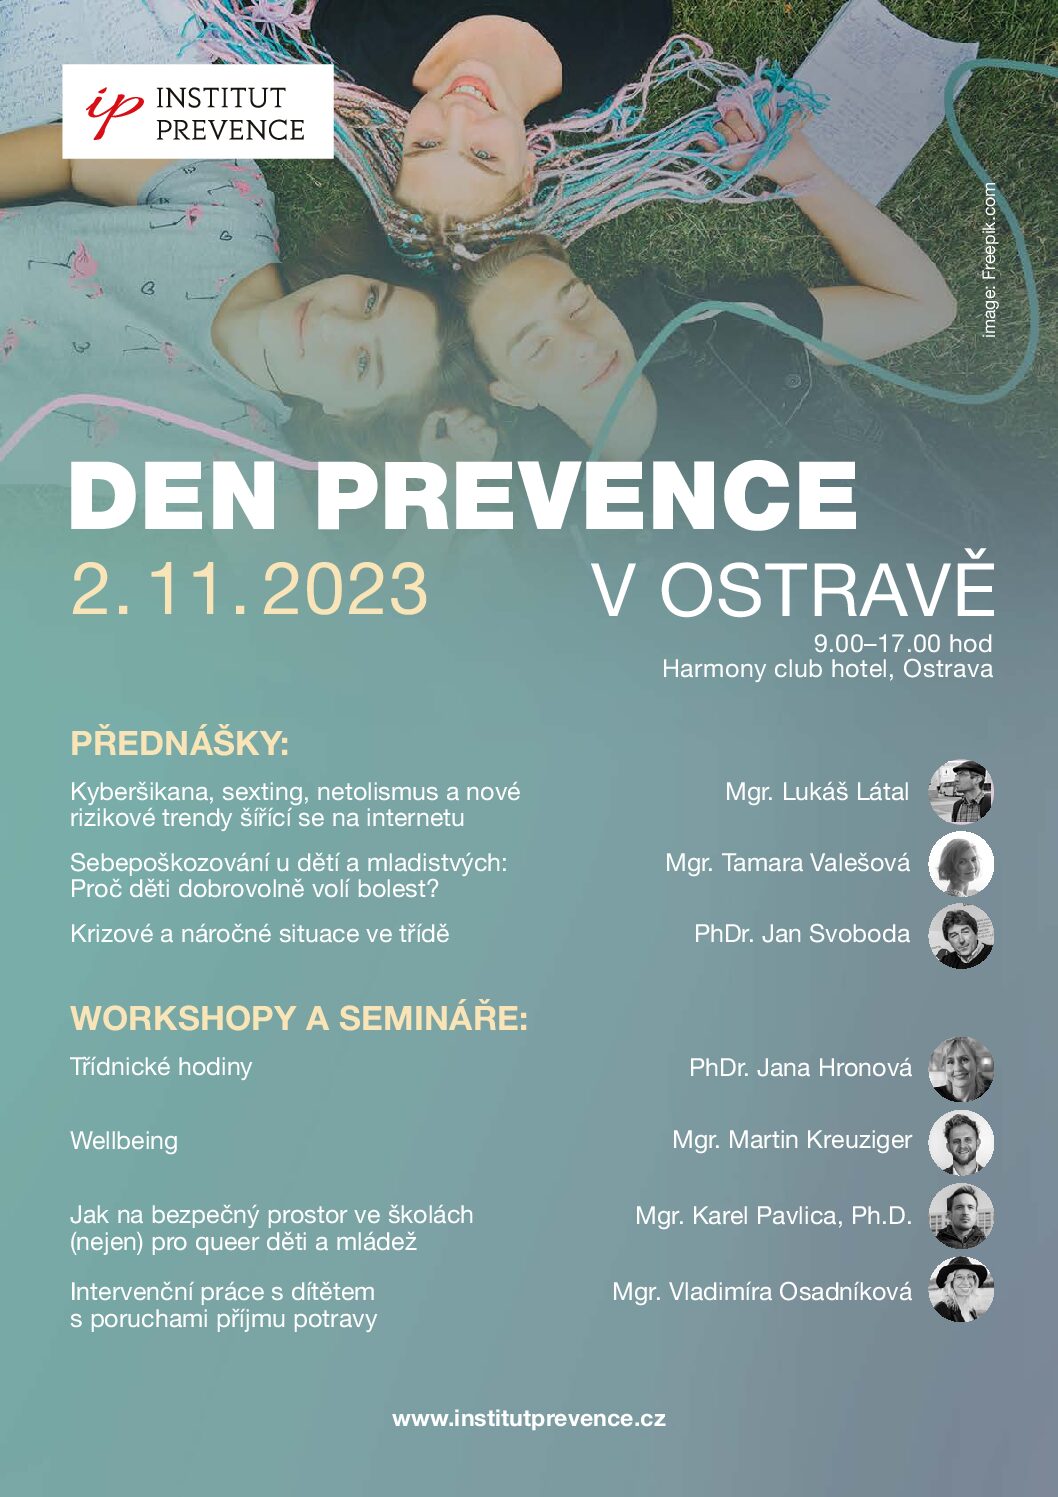 Pozvánka na konferenci Den prevence v Ostravě